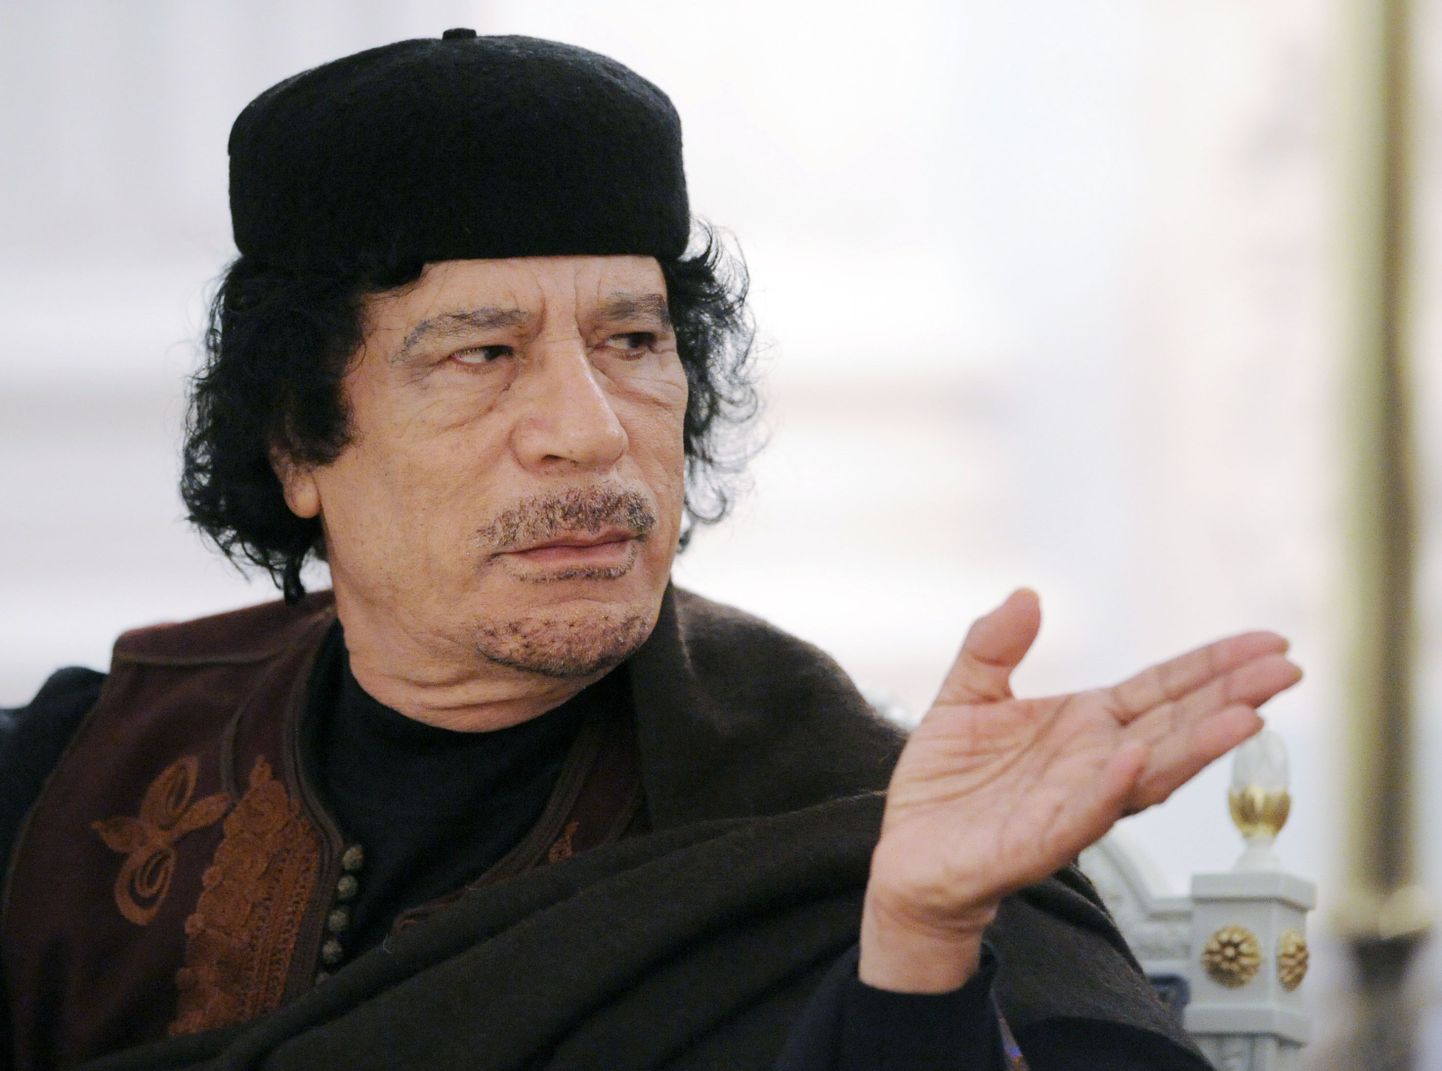 Liibüa liider Muammar Gaddafi.